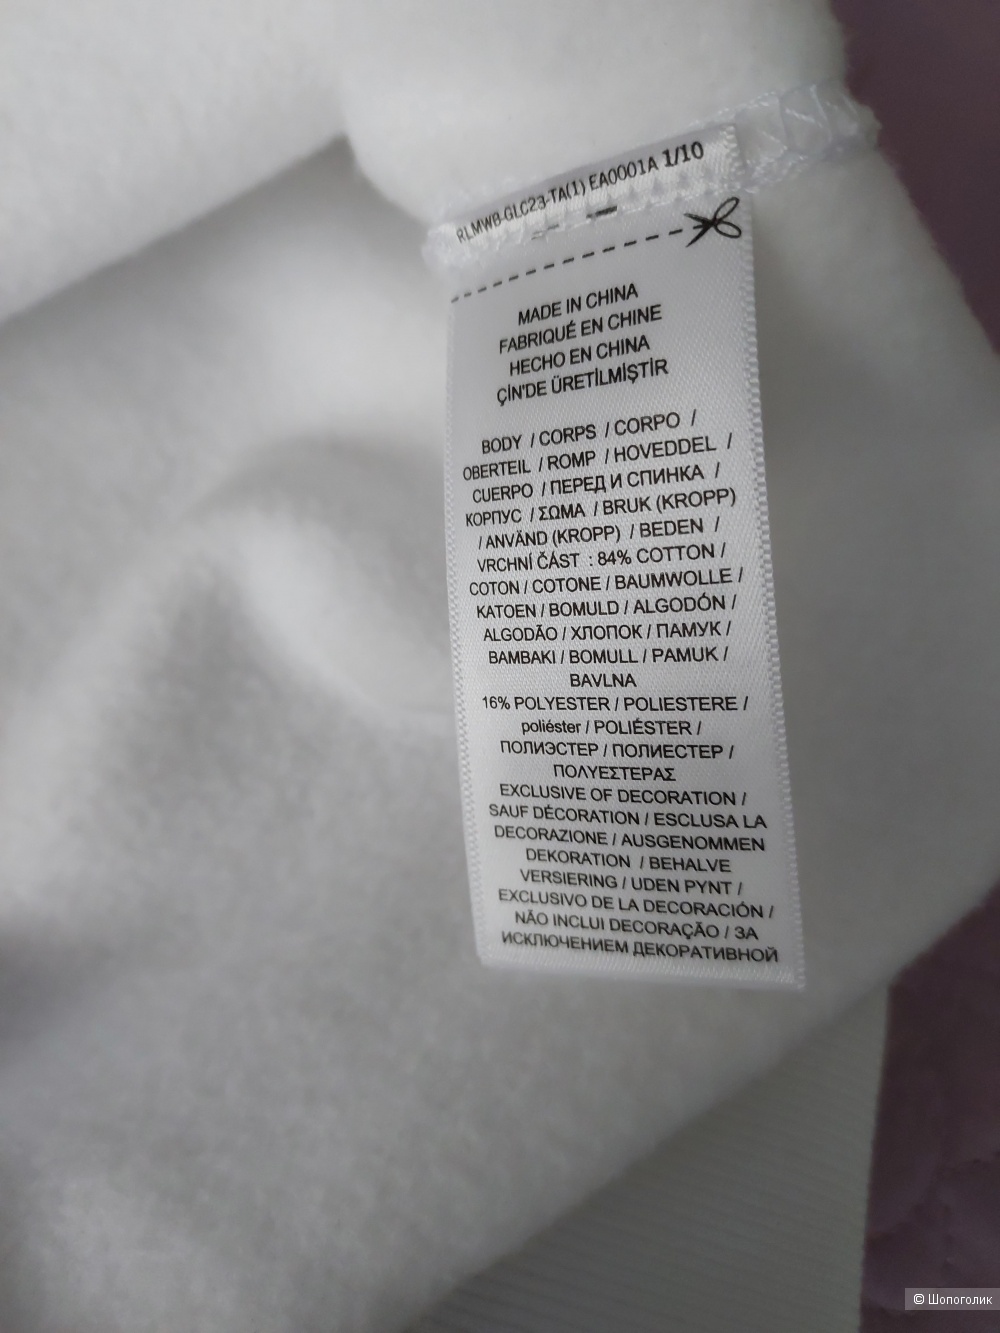 Polo Ralph Lauren - Белое трикотажное платье, размер М